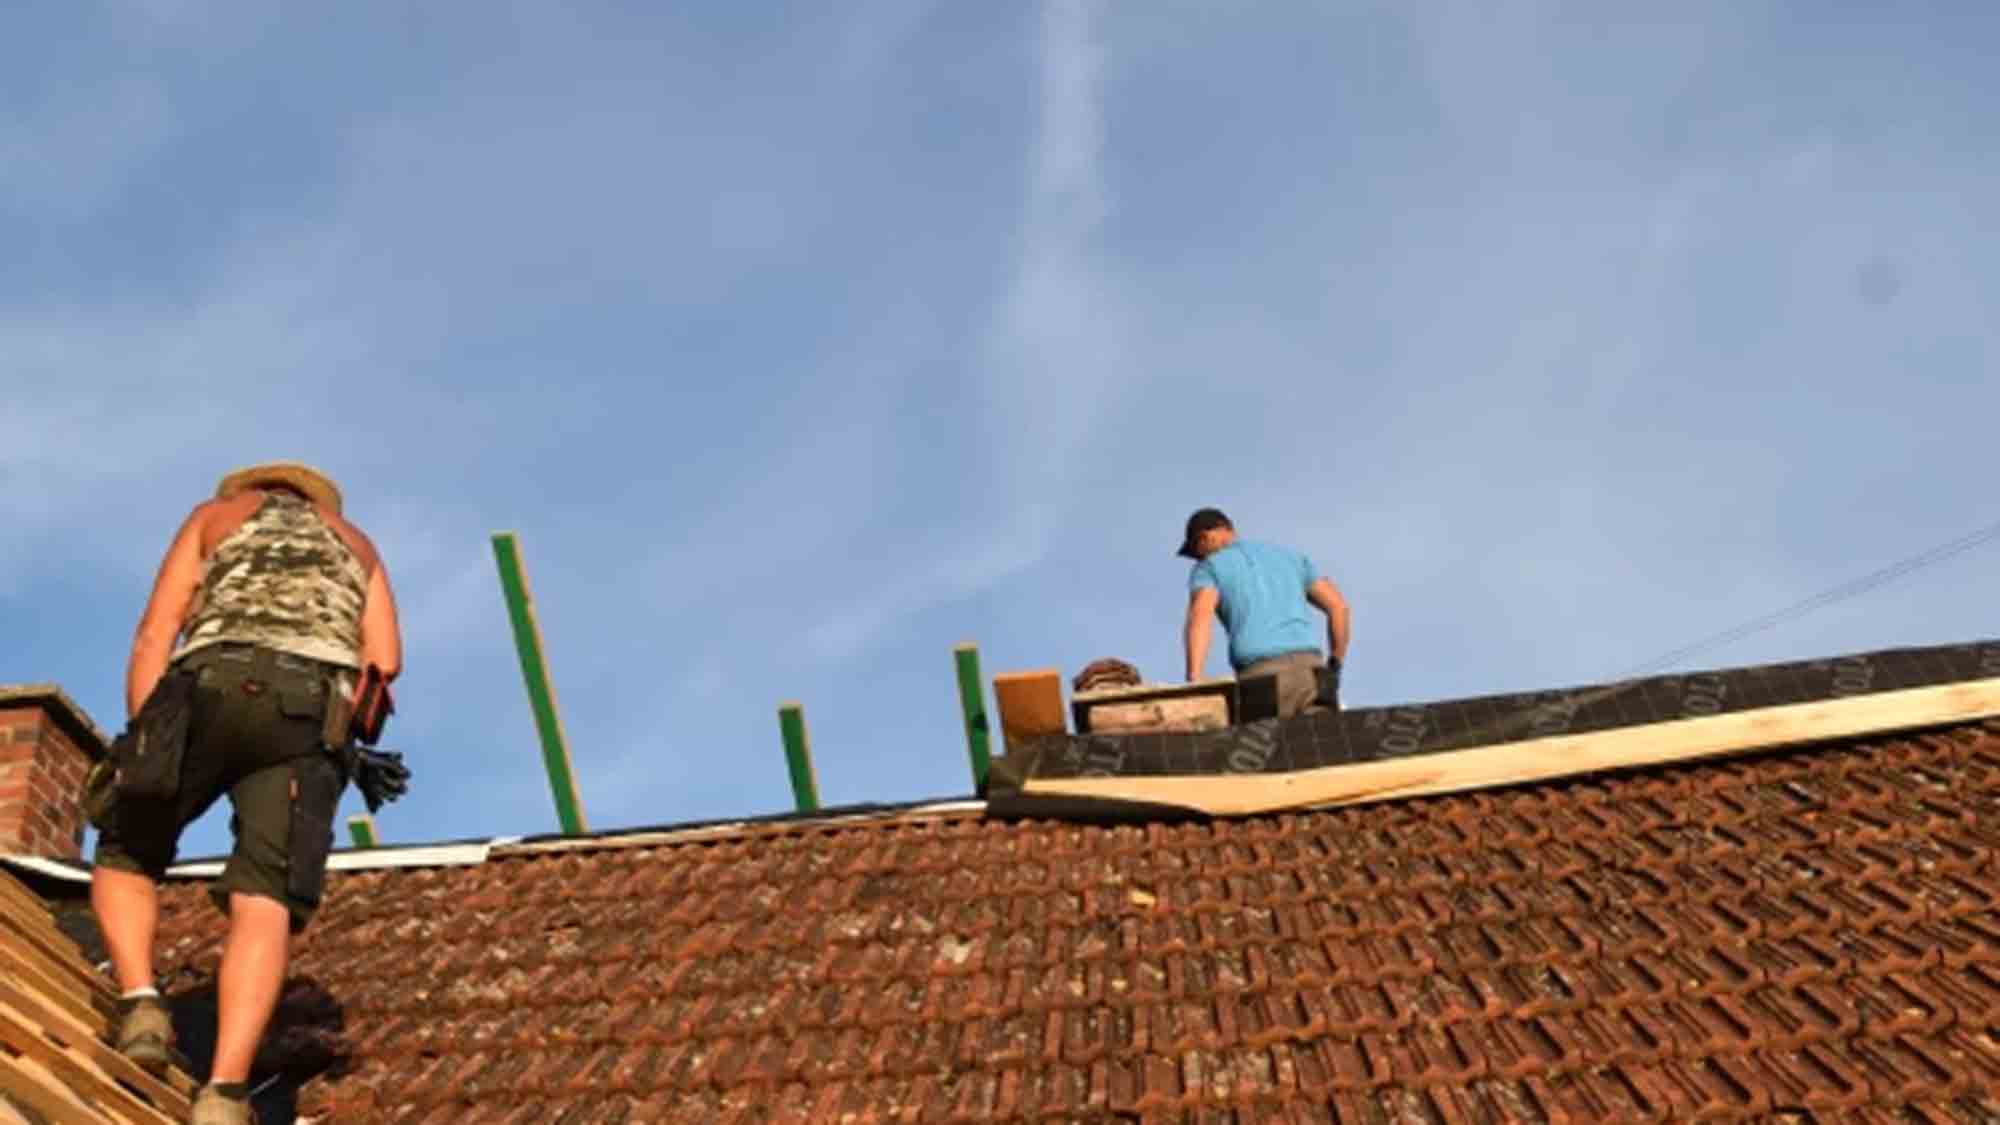 Landesinnungsverband des Dachdeckerhandwerks Hessen: Billig Arbeit wird meist doppelt bezahlt